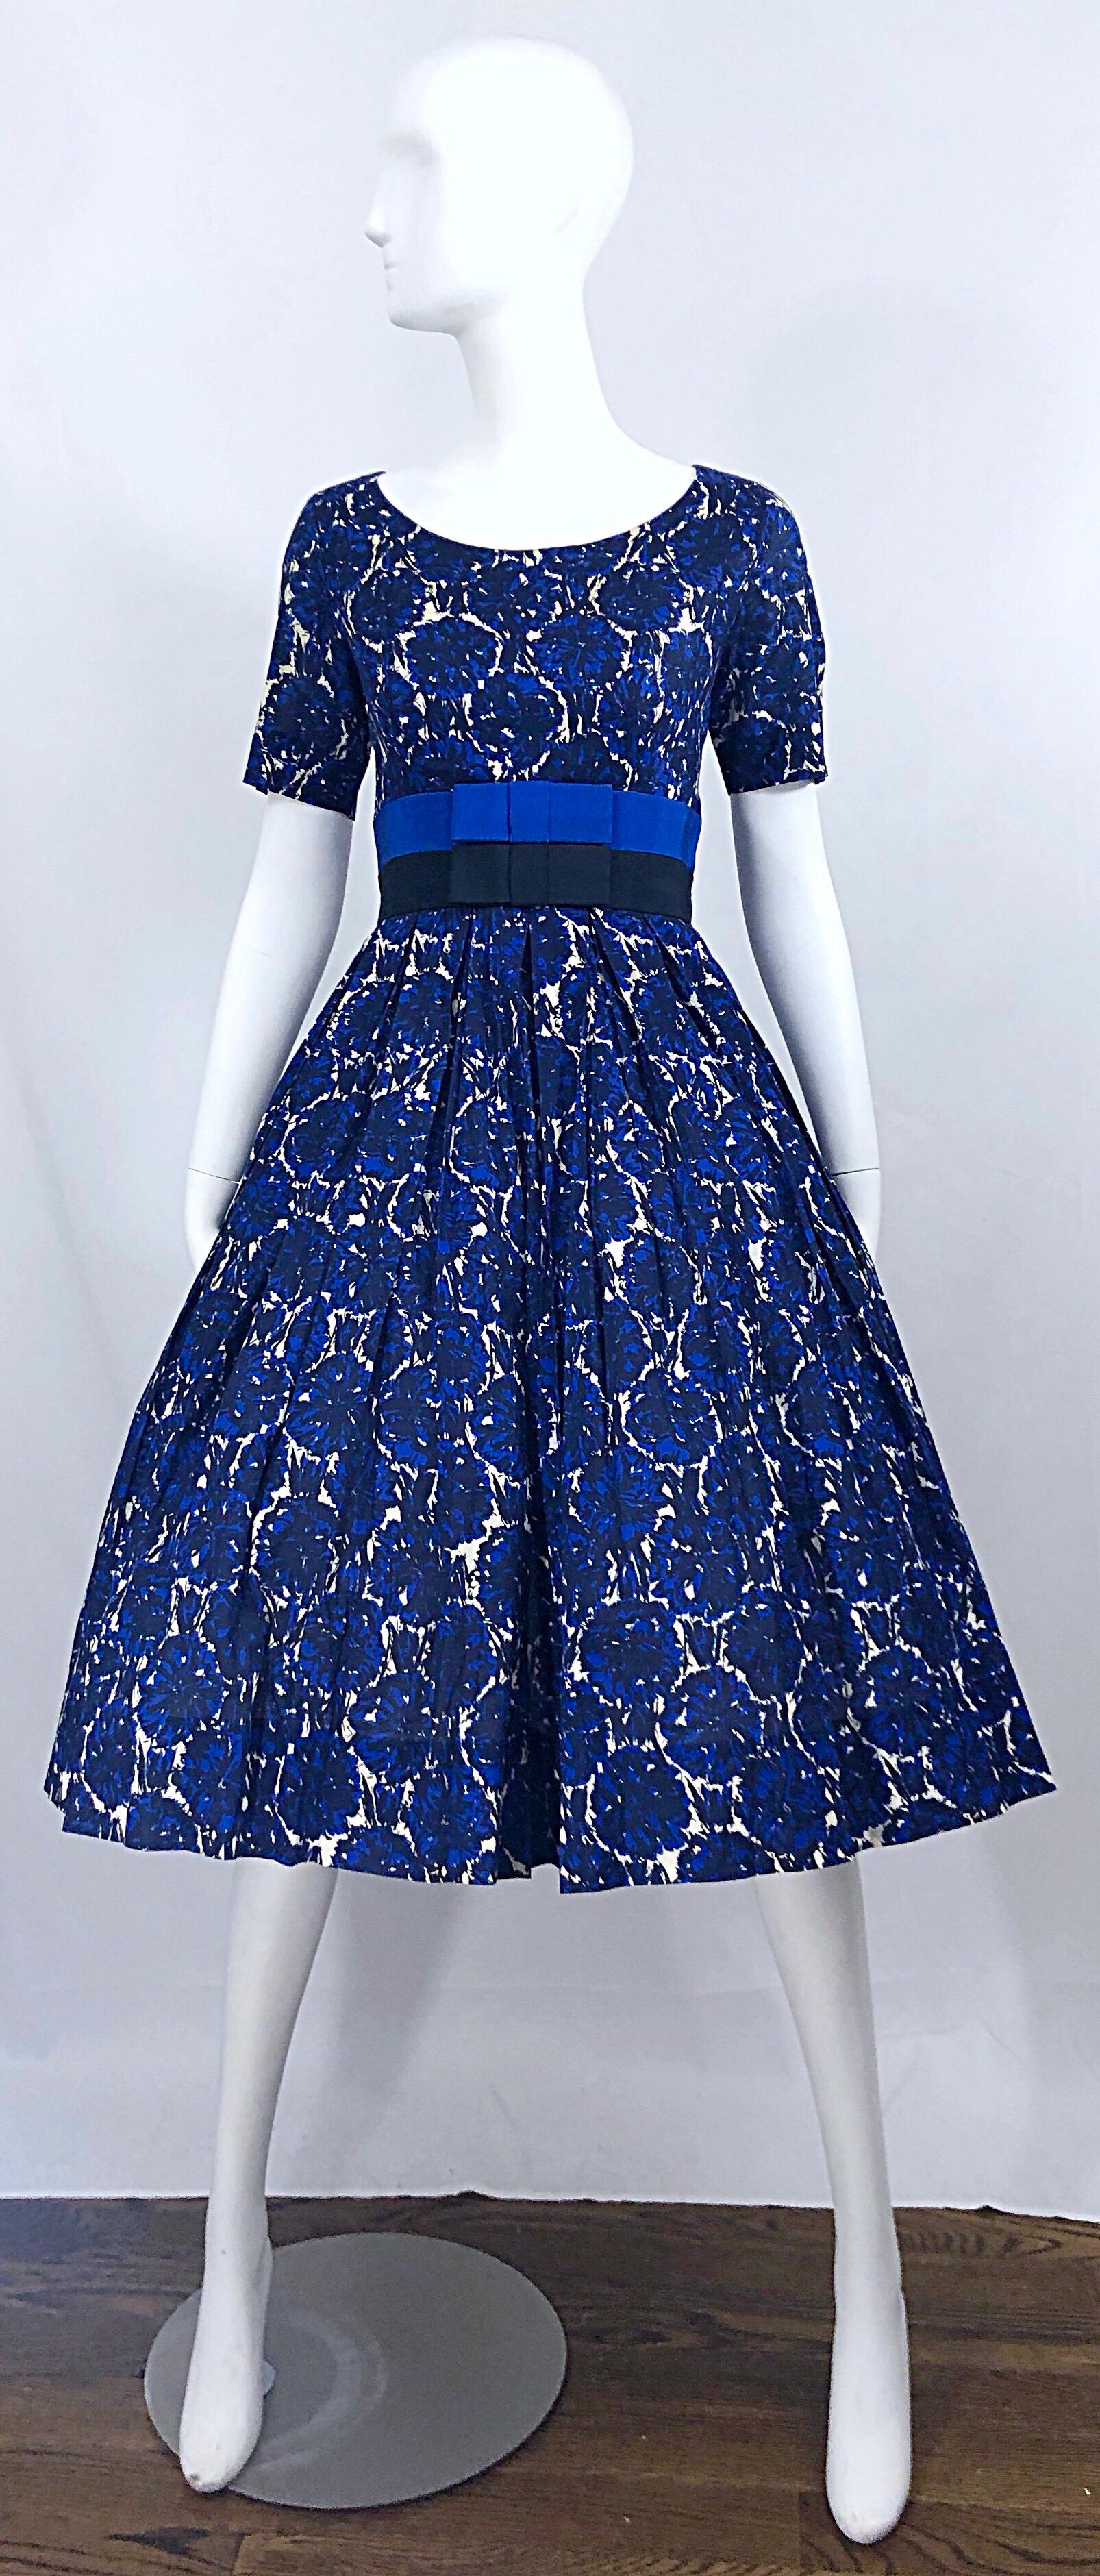 Phänomenal Vintage 50s BONWIT TELLER demi couture blau abstrakten Blumendruck fit n 'flare Baumwollkleid! Mit tailliertem Mieder und zwei Bändern mit Grosgrain-Schleifen aus Seide in Blau und Schwarz. Der volle Rock hat viel Platz für eine Krinoline